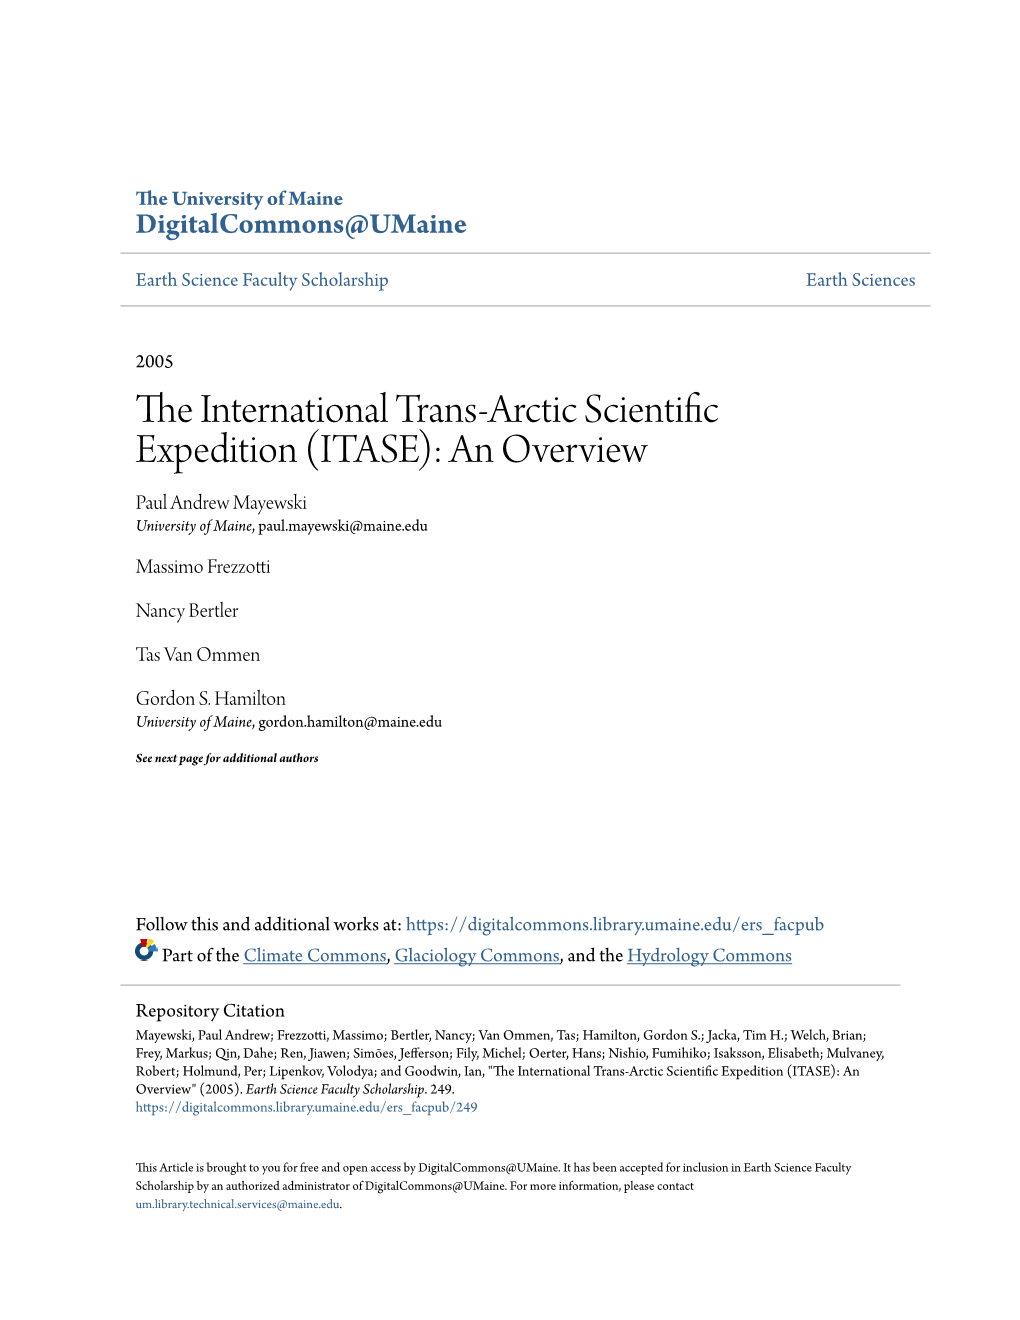 The International Trans-Arctic Scientific Expedition (ITASE)